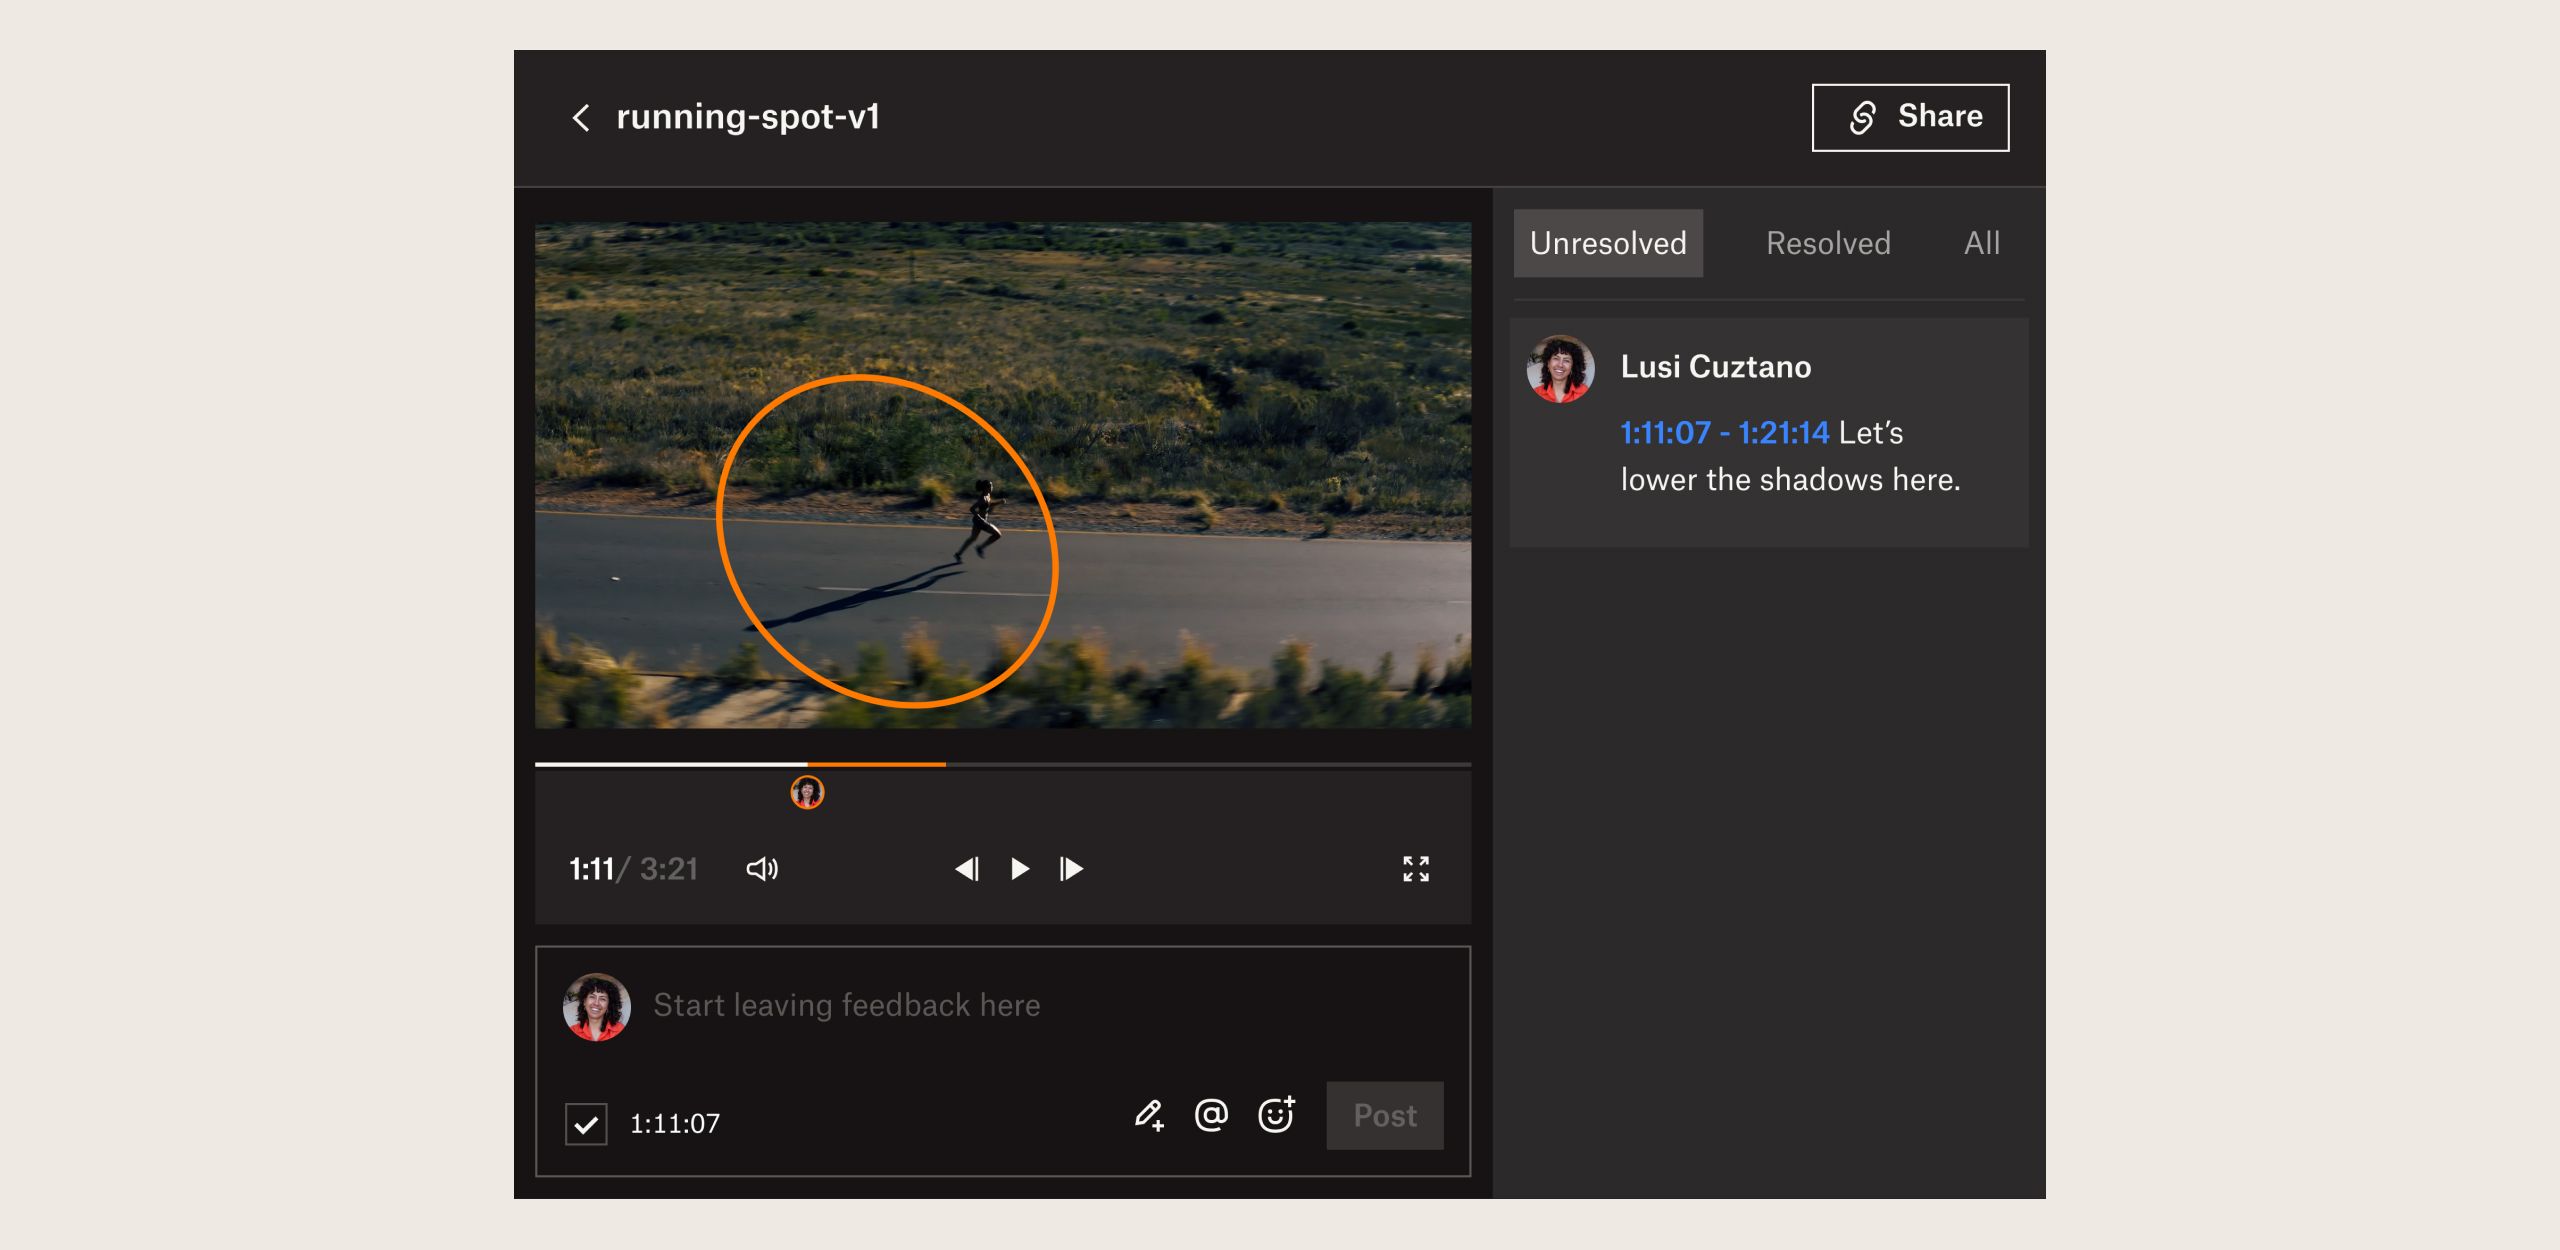 La interfaz de usuario del producto muestra cómo revisar y aprobar un video con Dropbox Replay